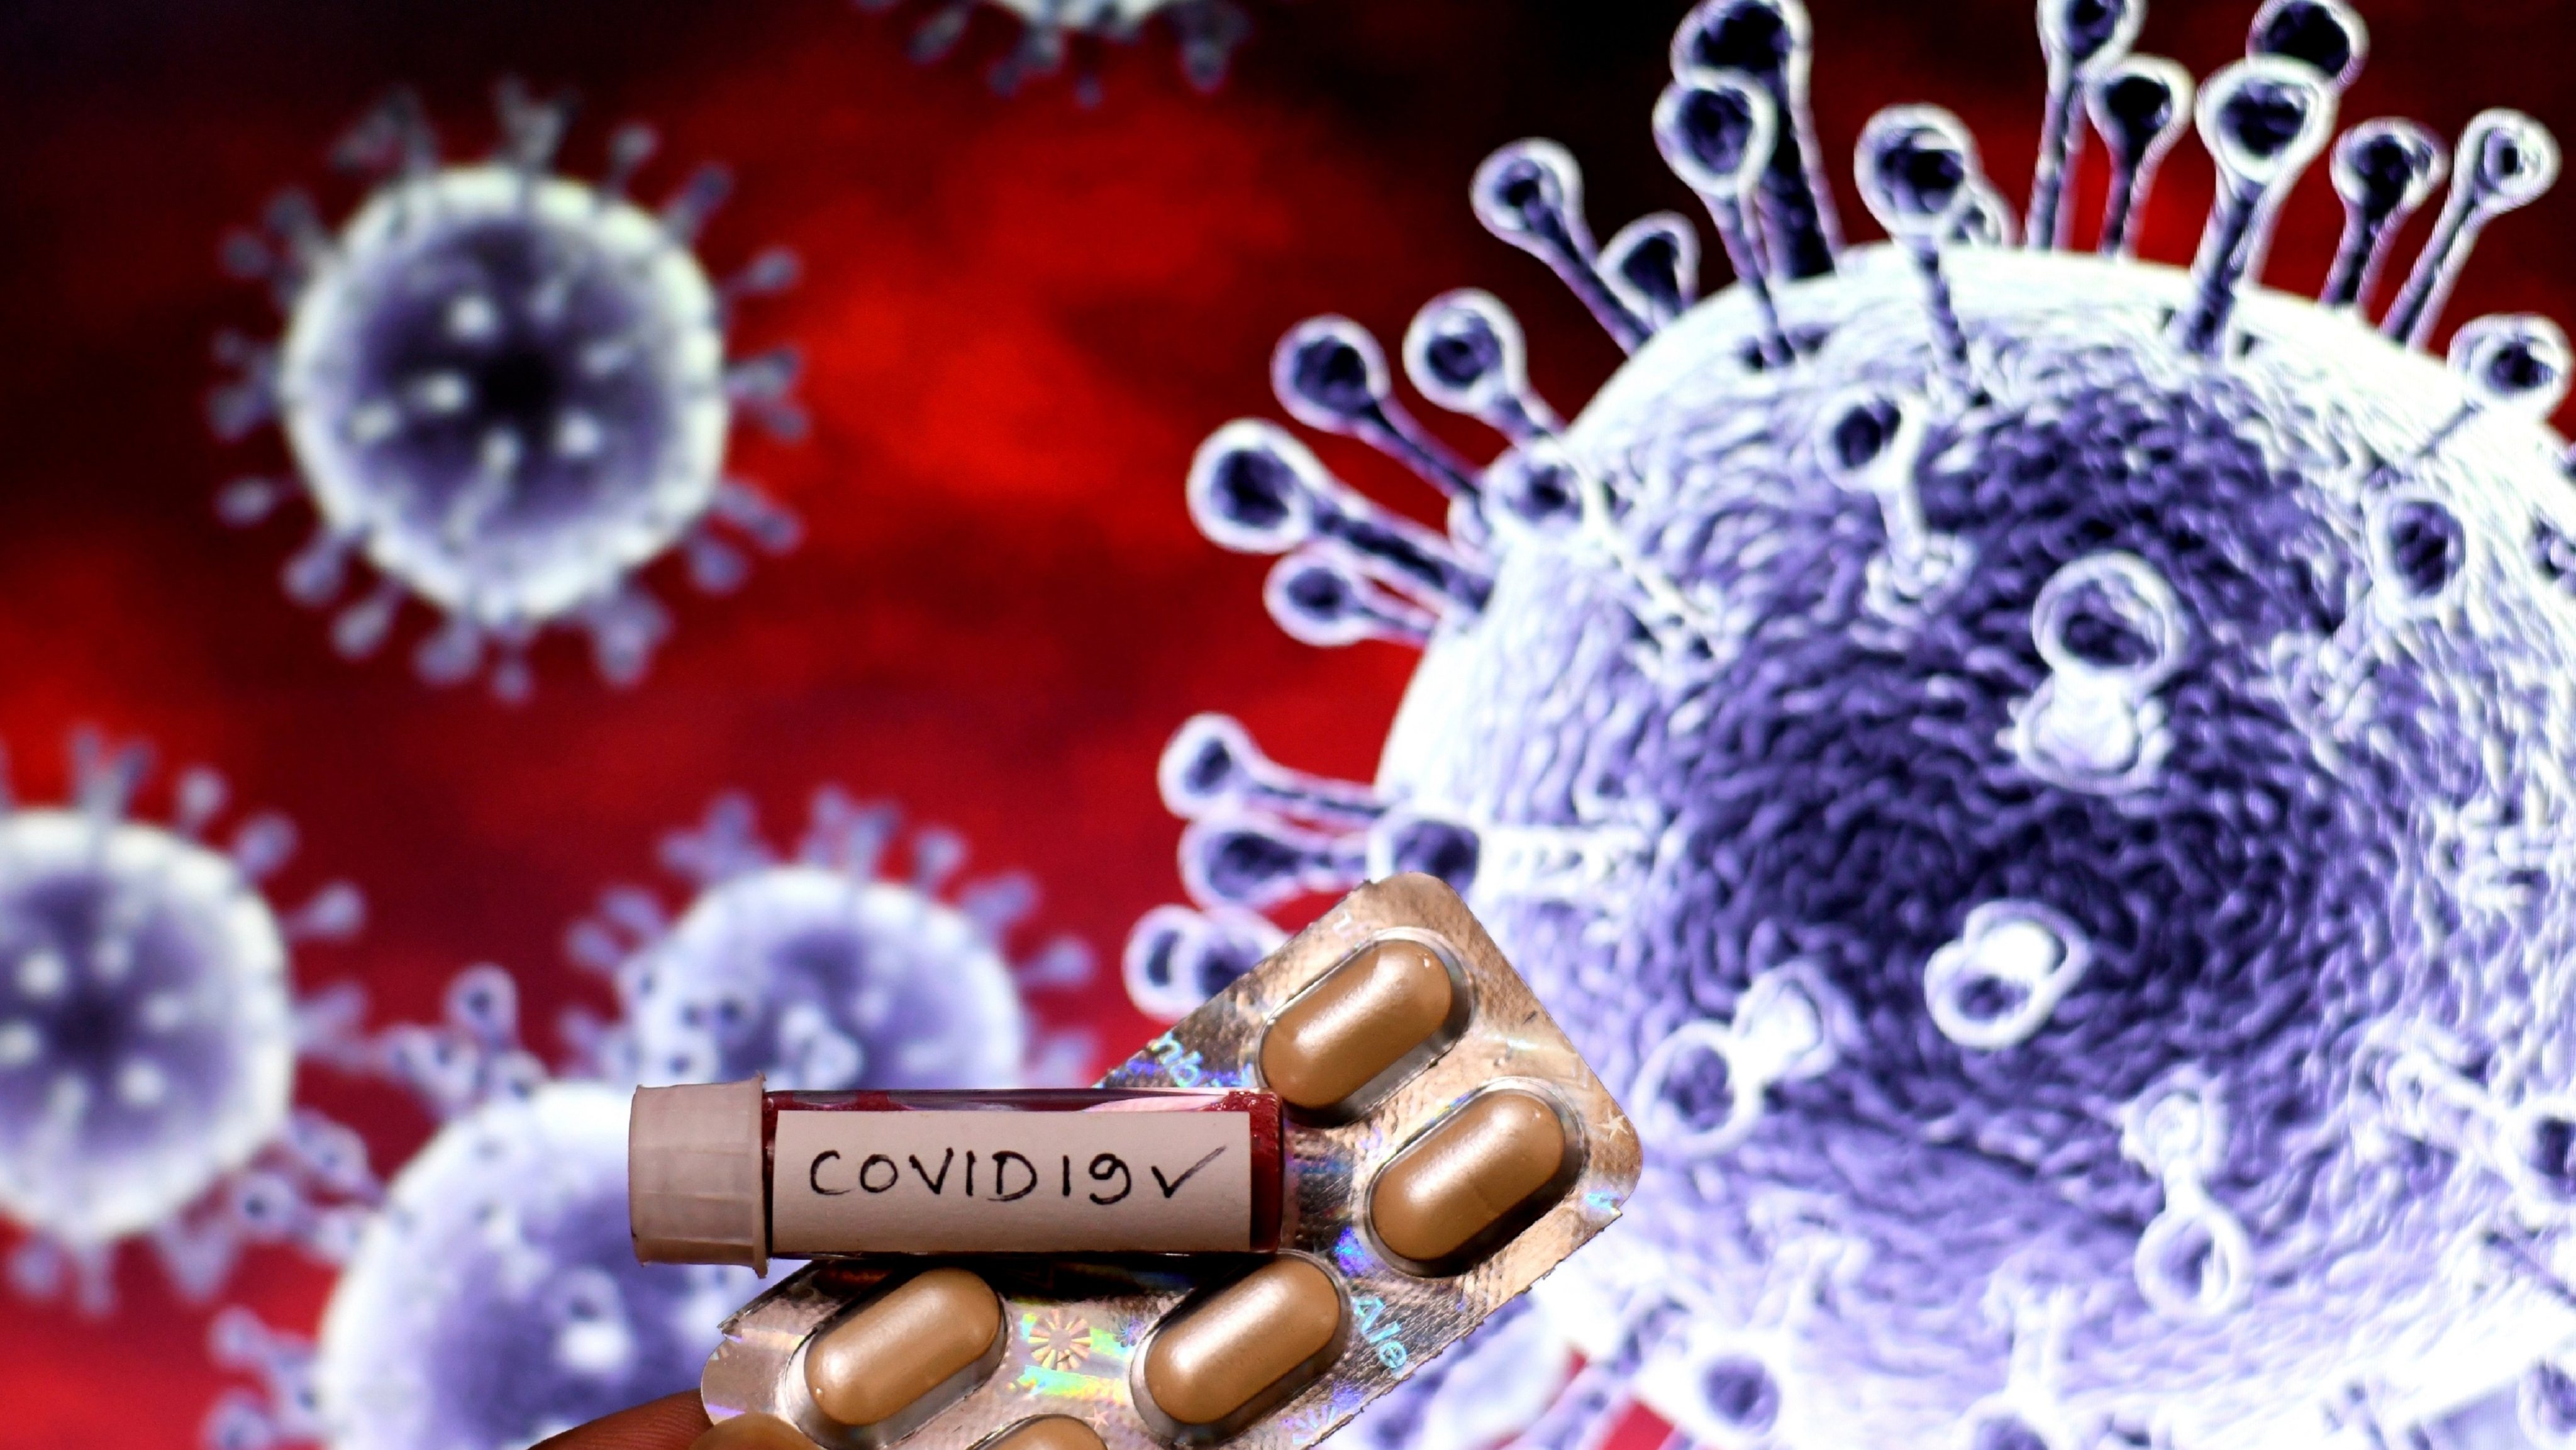 Ilustração do coronavírus SARS-CoV-2